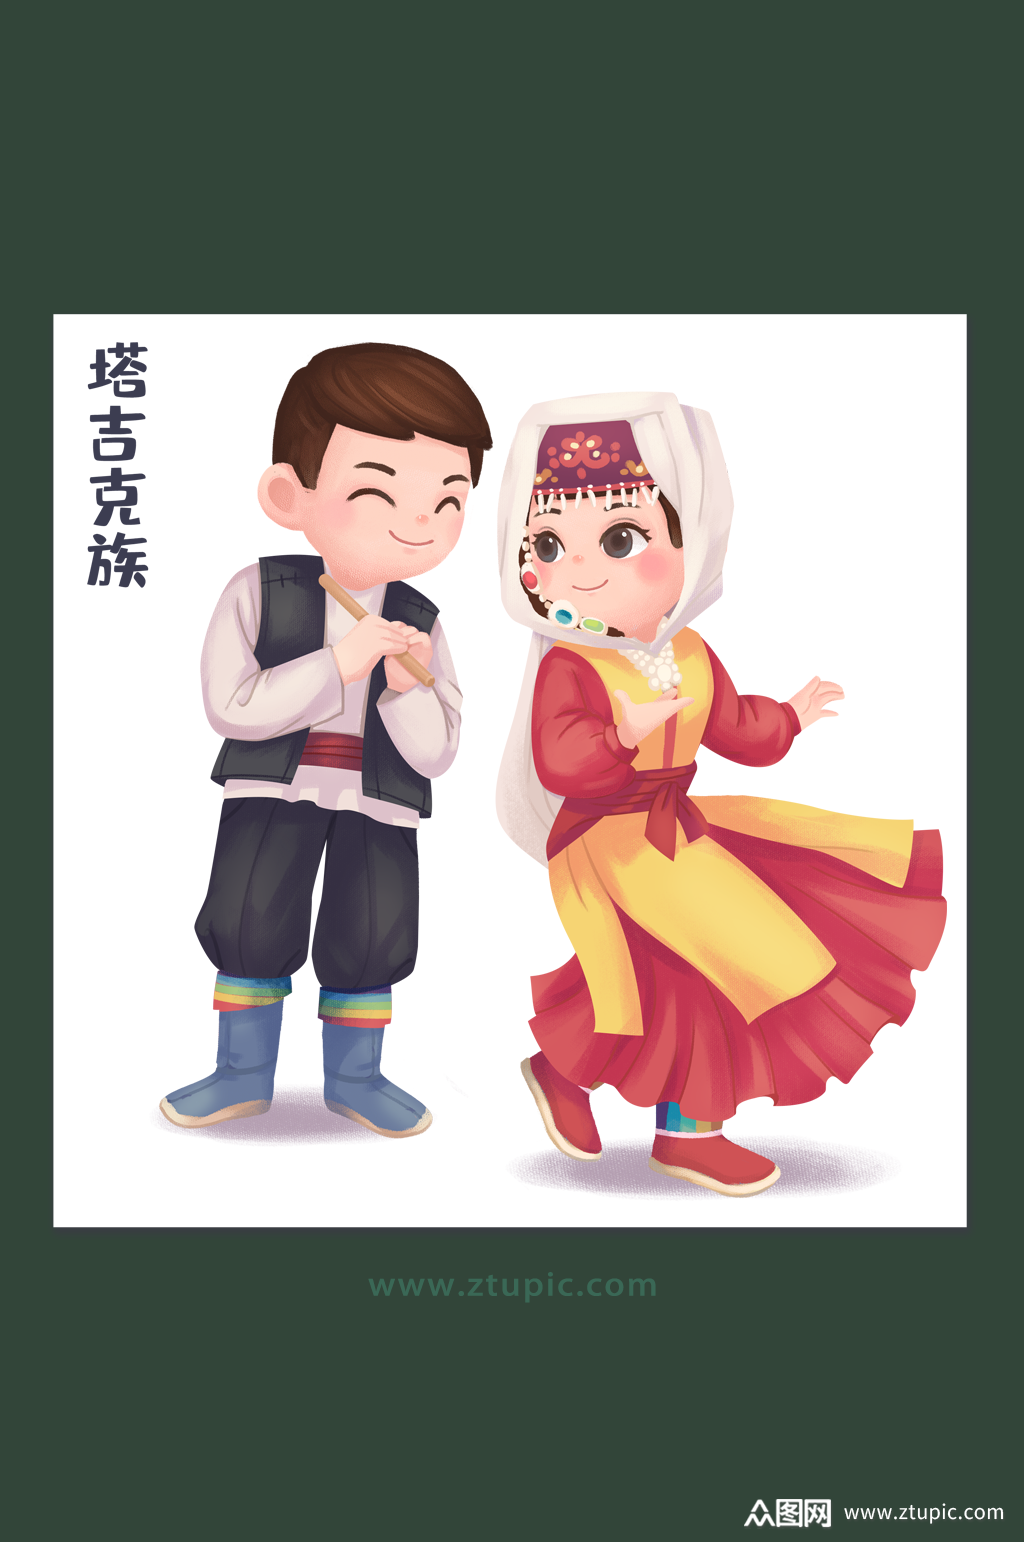 民族团结中华少数民族文化塔吉克族插画设计素材